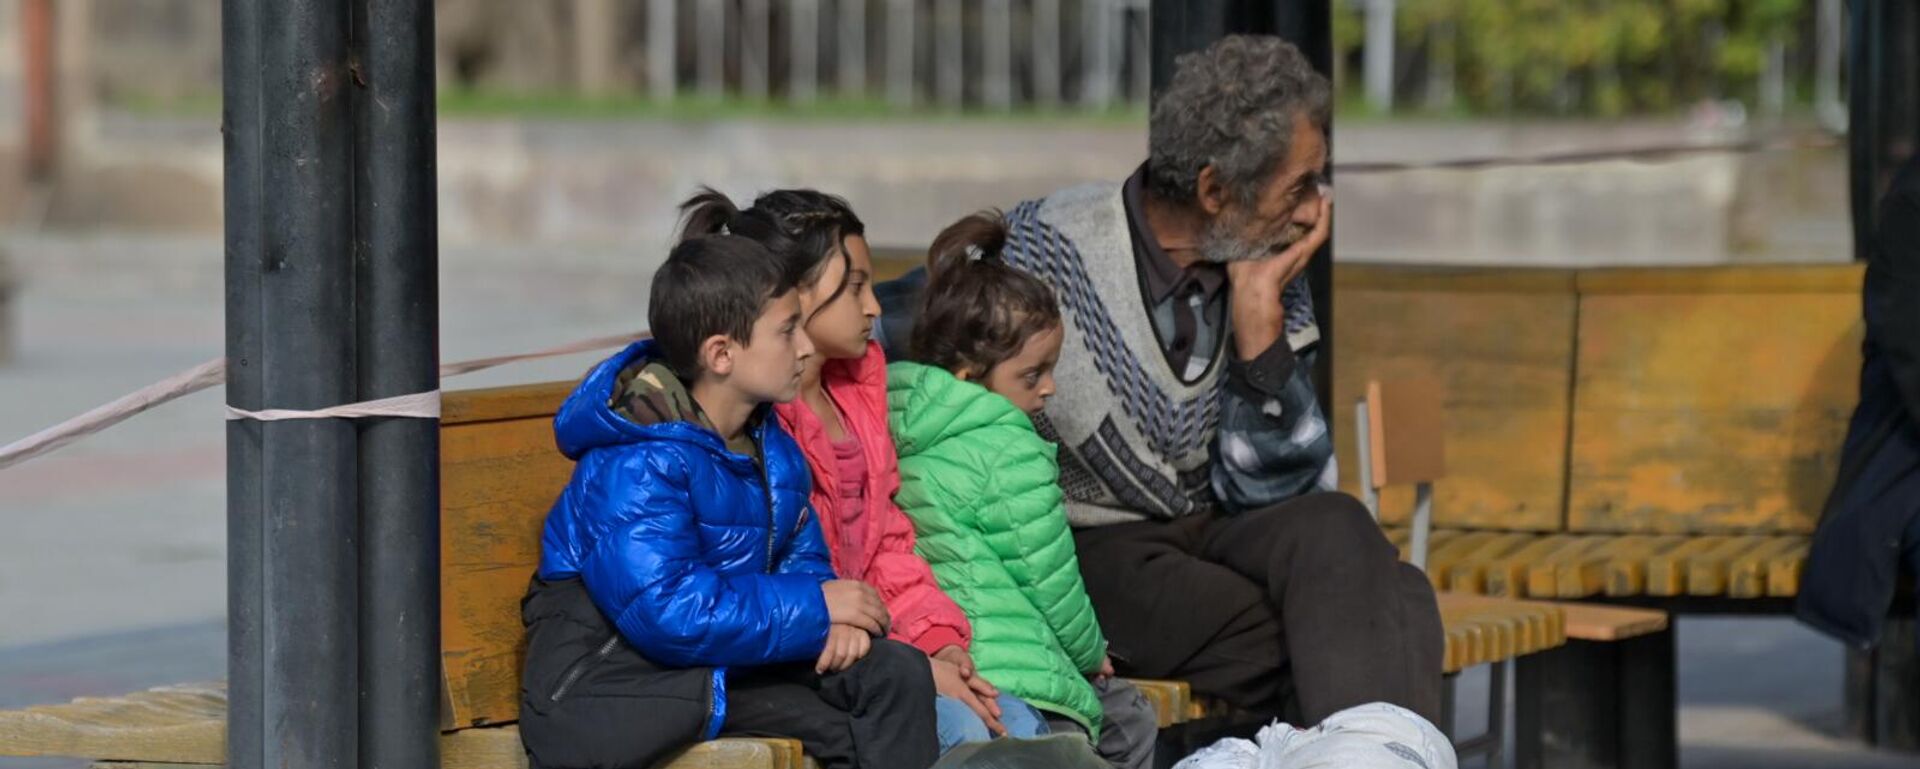 Более 50 тысяч вынужденных переселенцев из Нагорного Карабаха прибыли в Армению